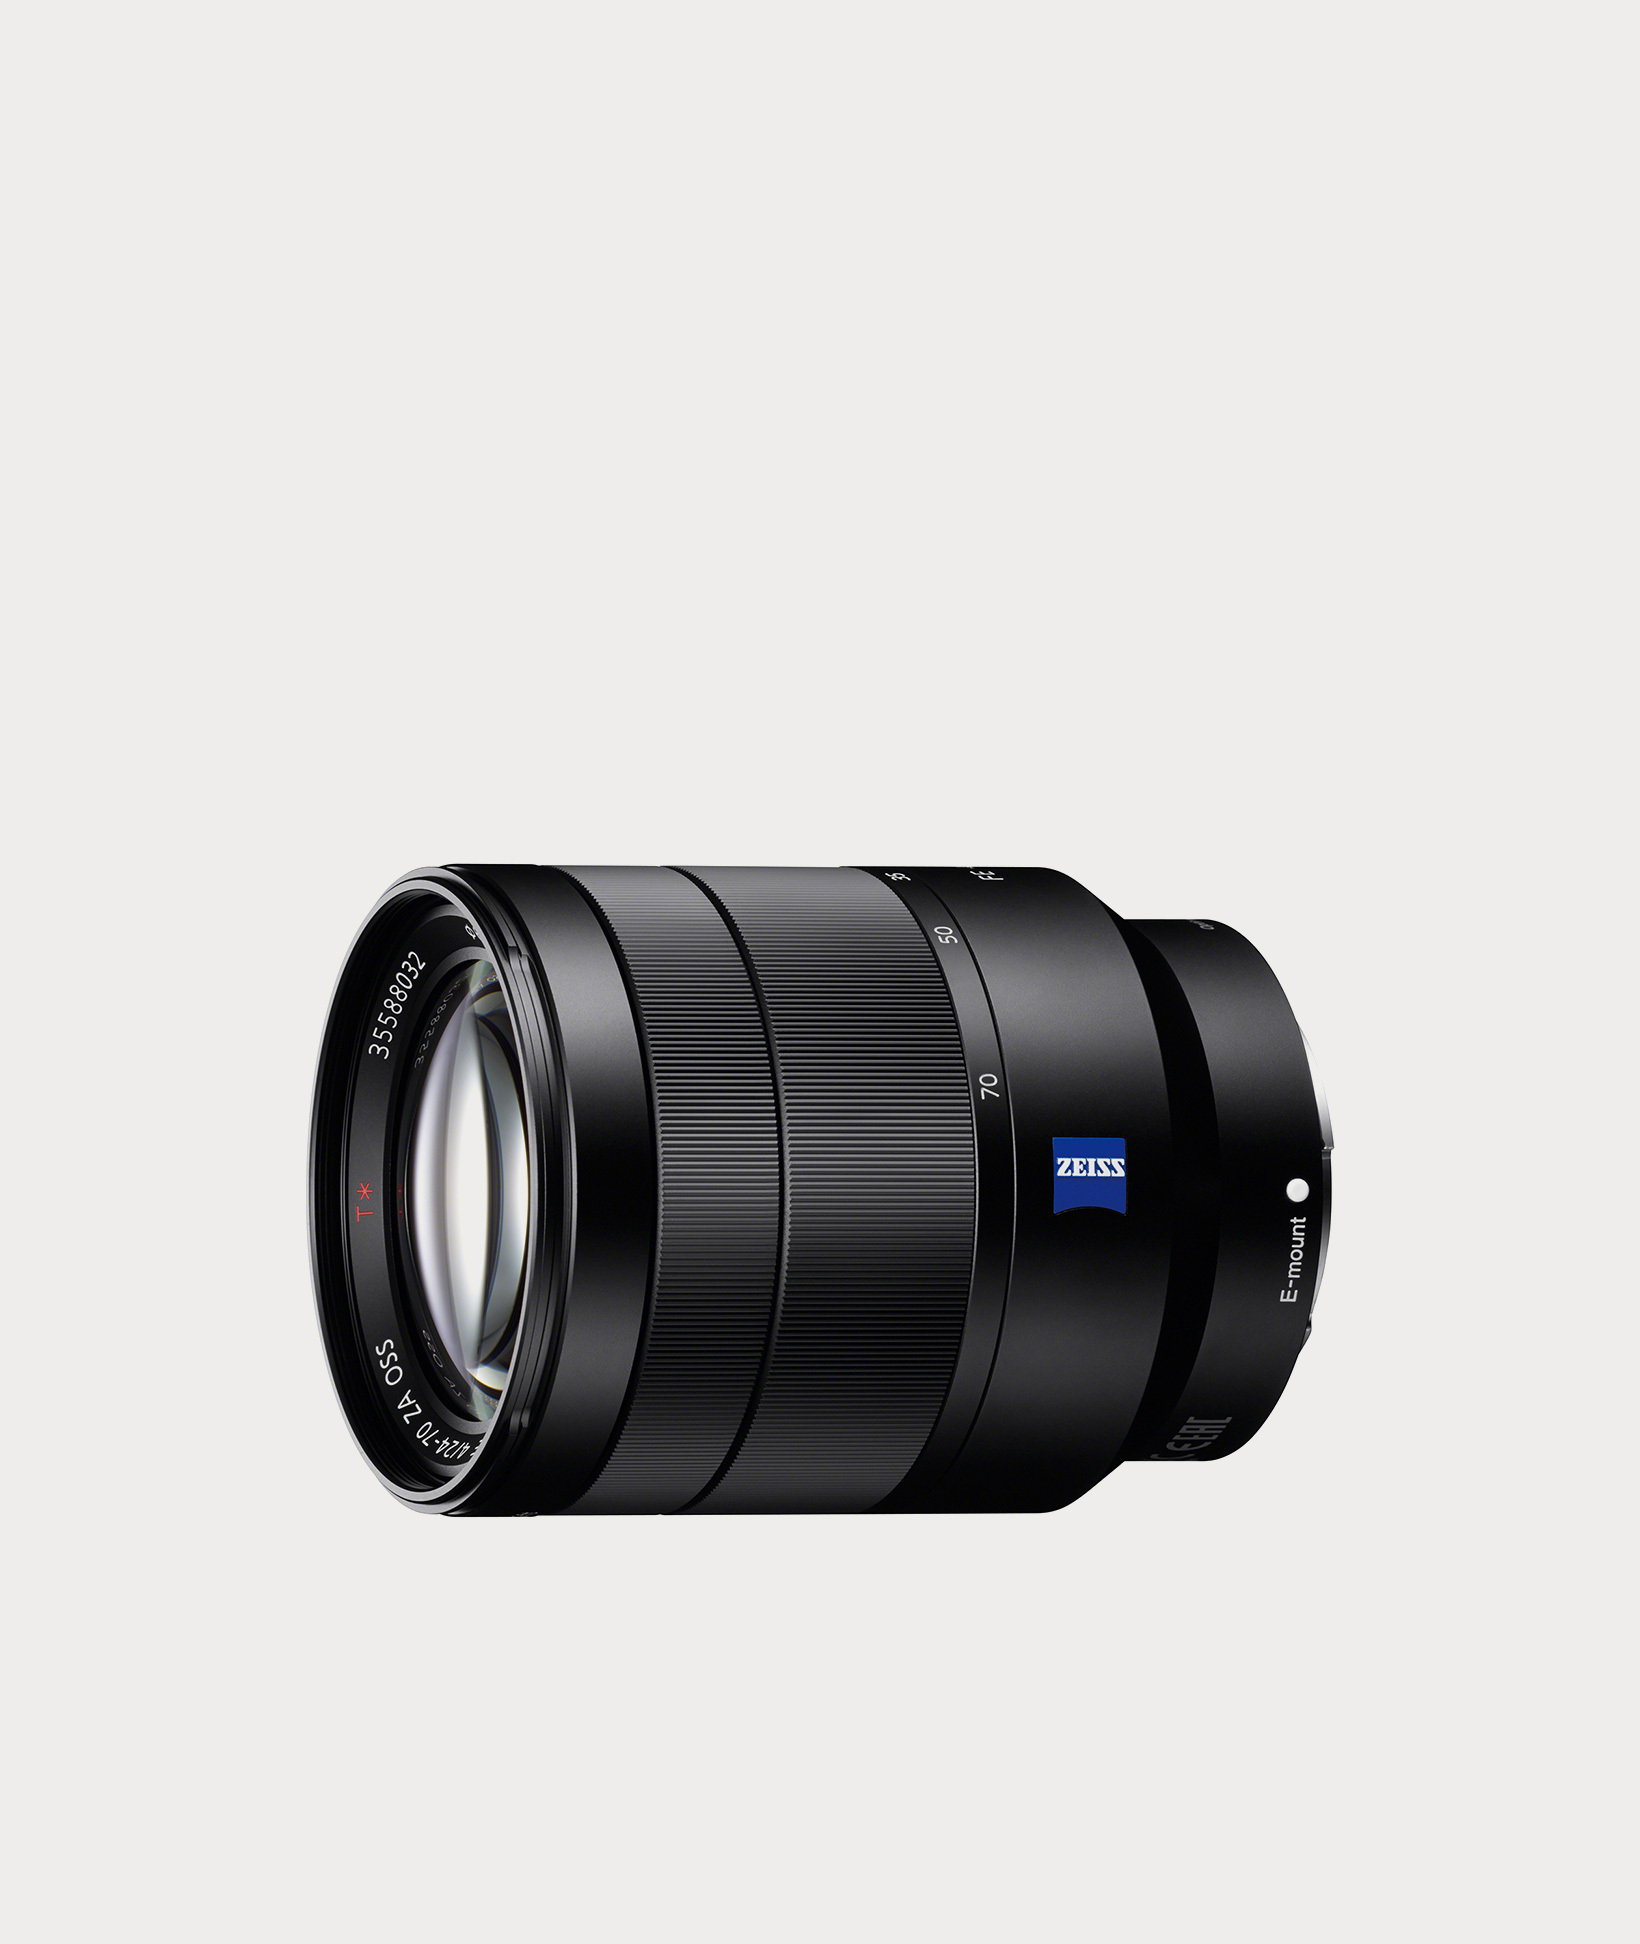 Sony Vario-Tessar T* FE 24-70mm f/4 ZA OSS Lens (SEL2470Z)